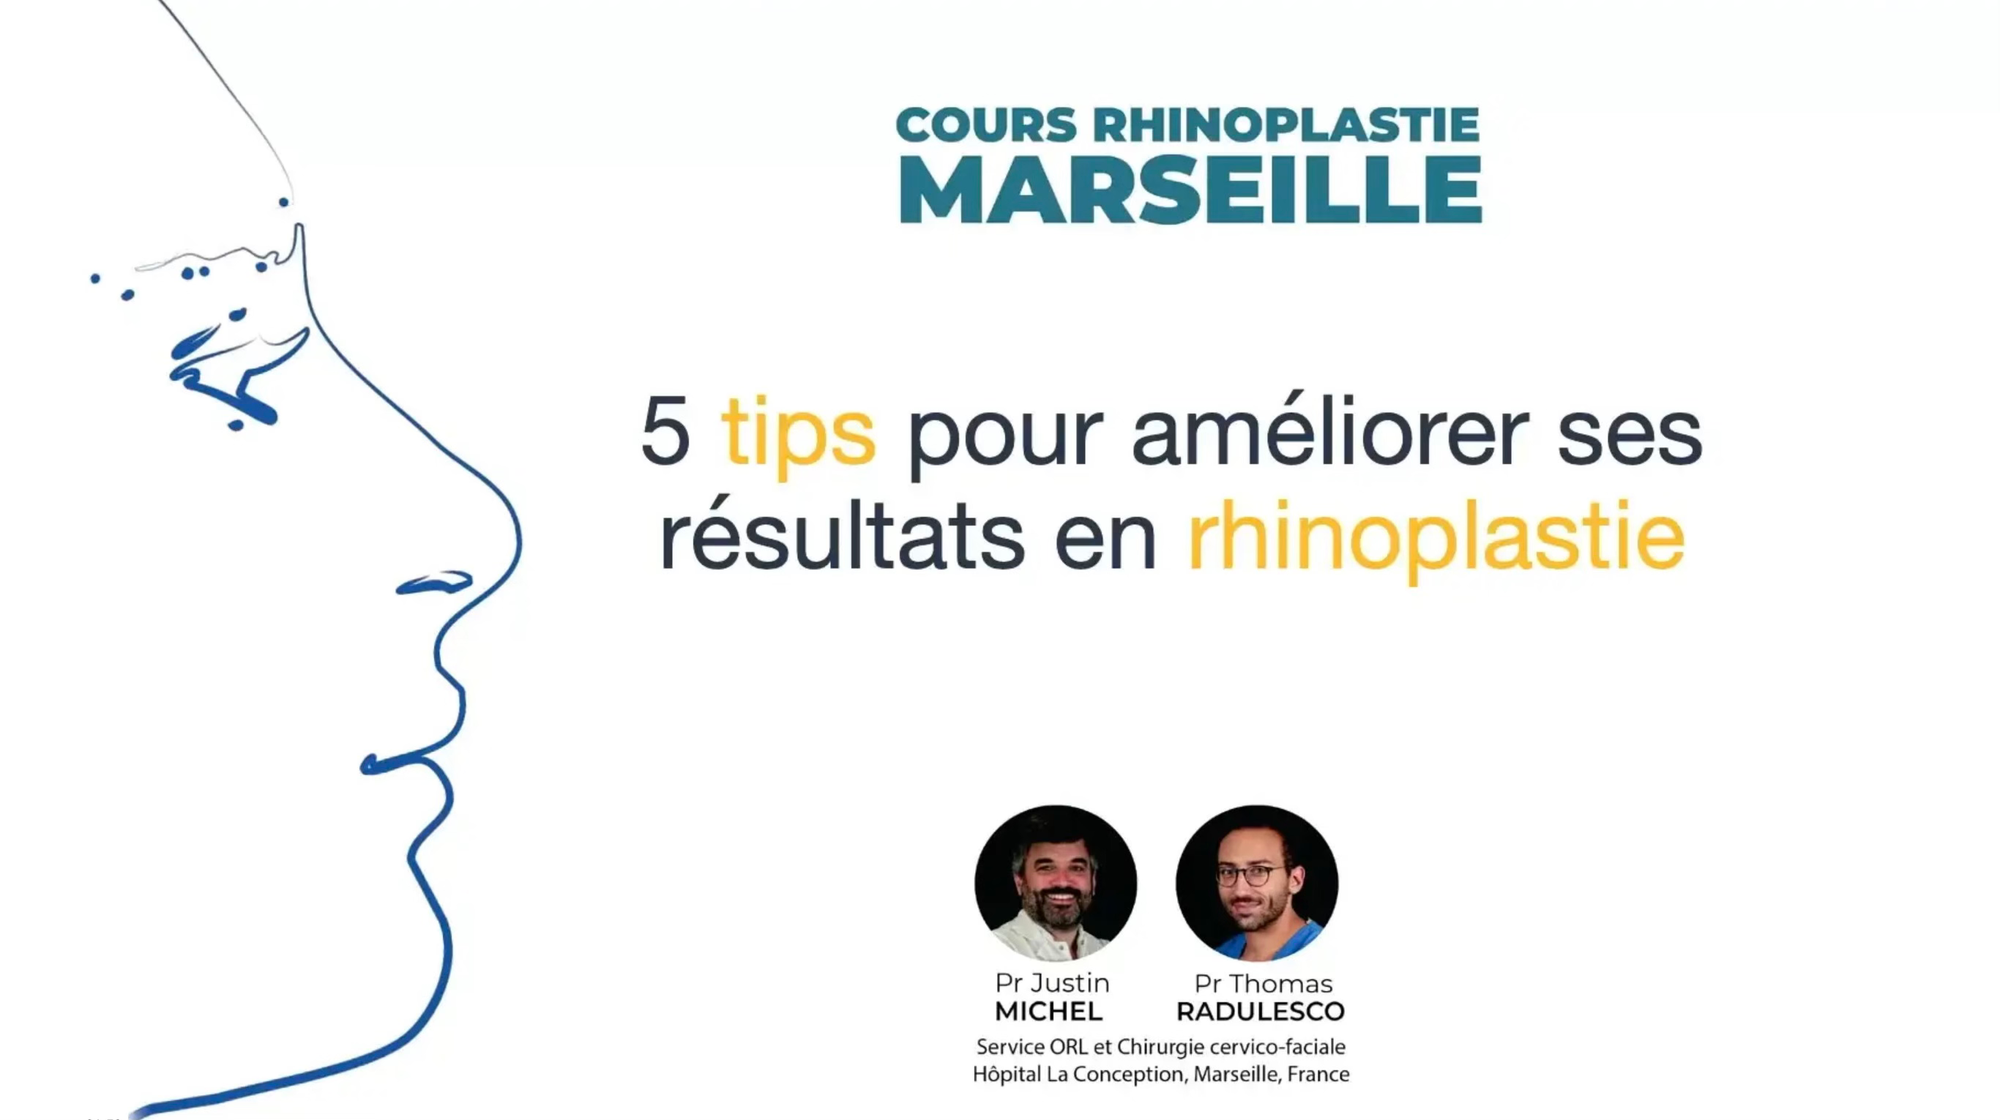 5 tips pour améliorer ses résultats en rhinoplastie